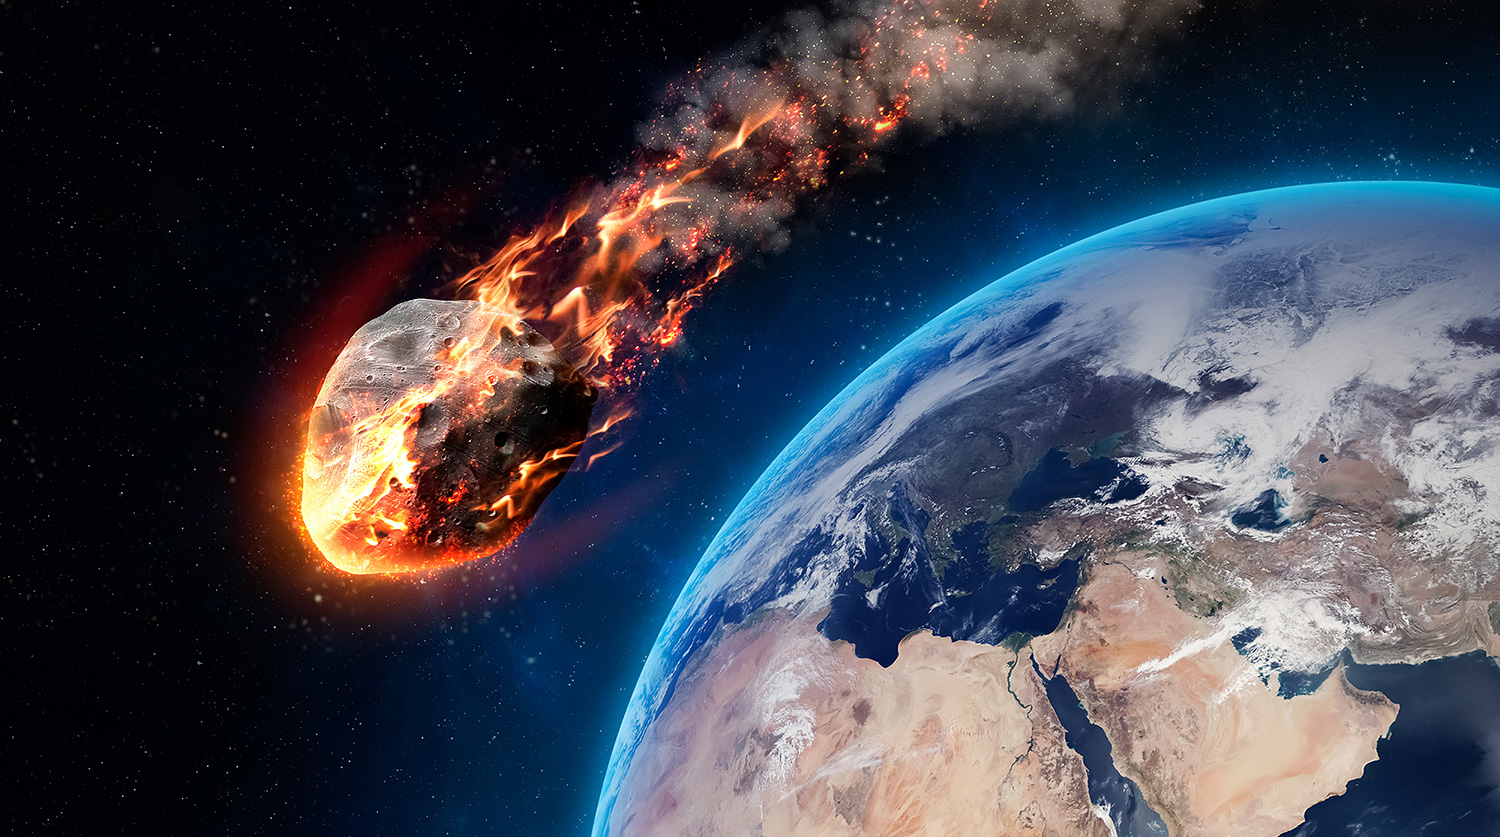 Астероид размером в футбольное поле пронесся в 4 млн км от Земли